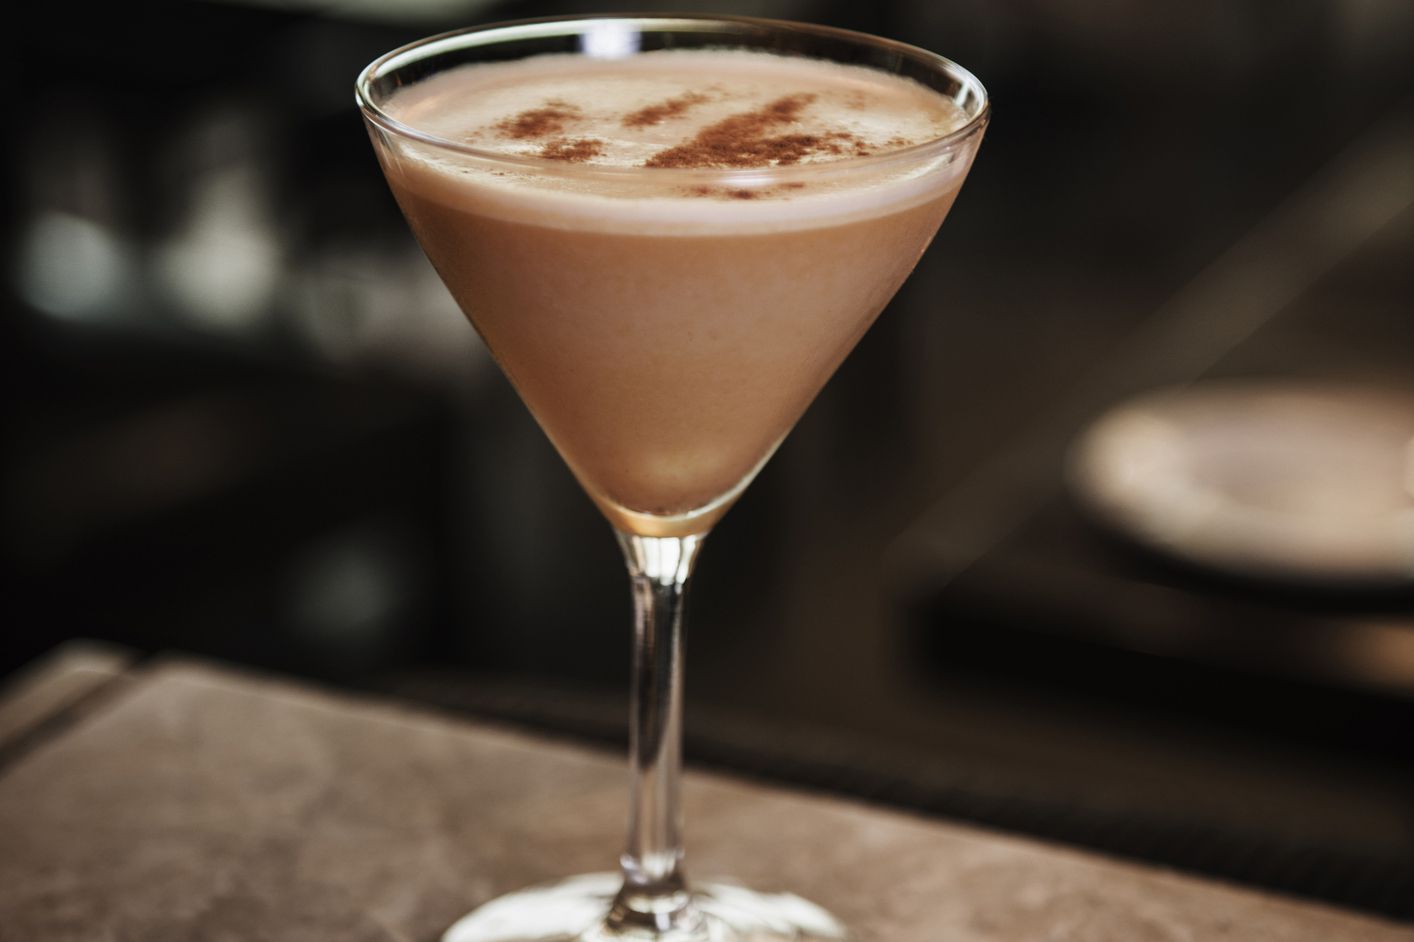 espresso martini with vanilla vodka